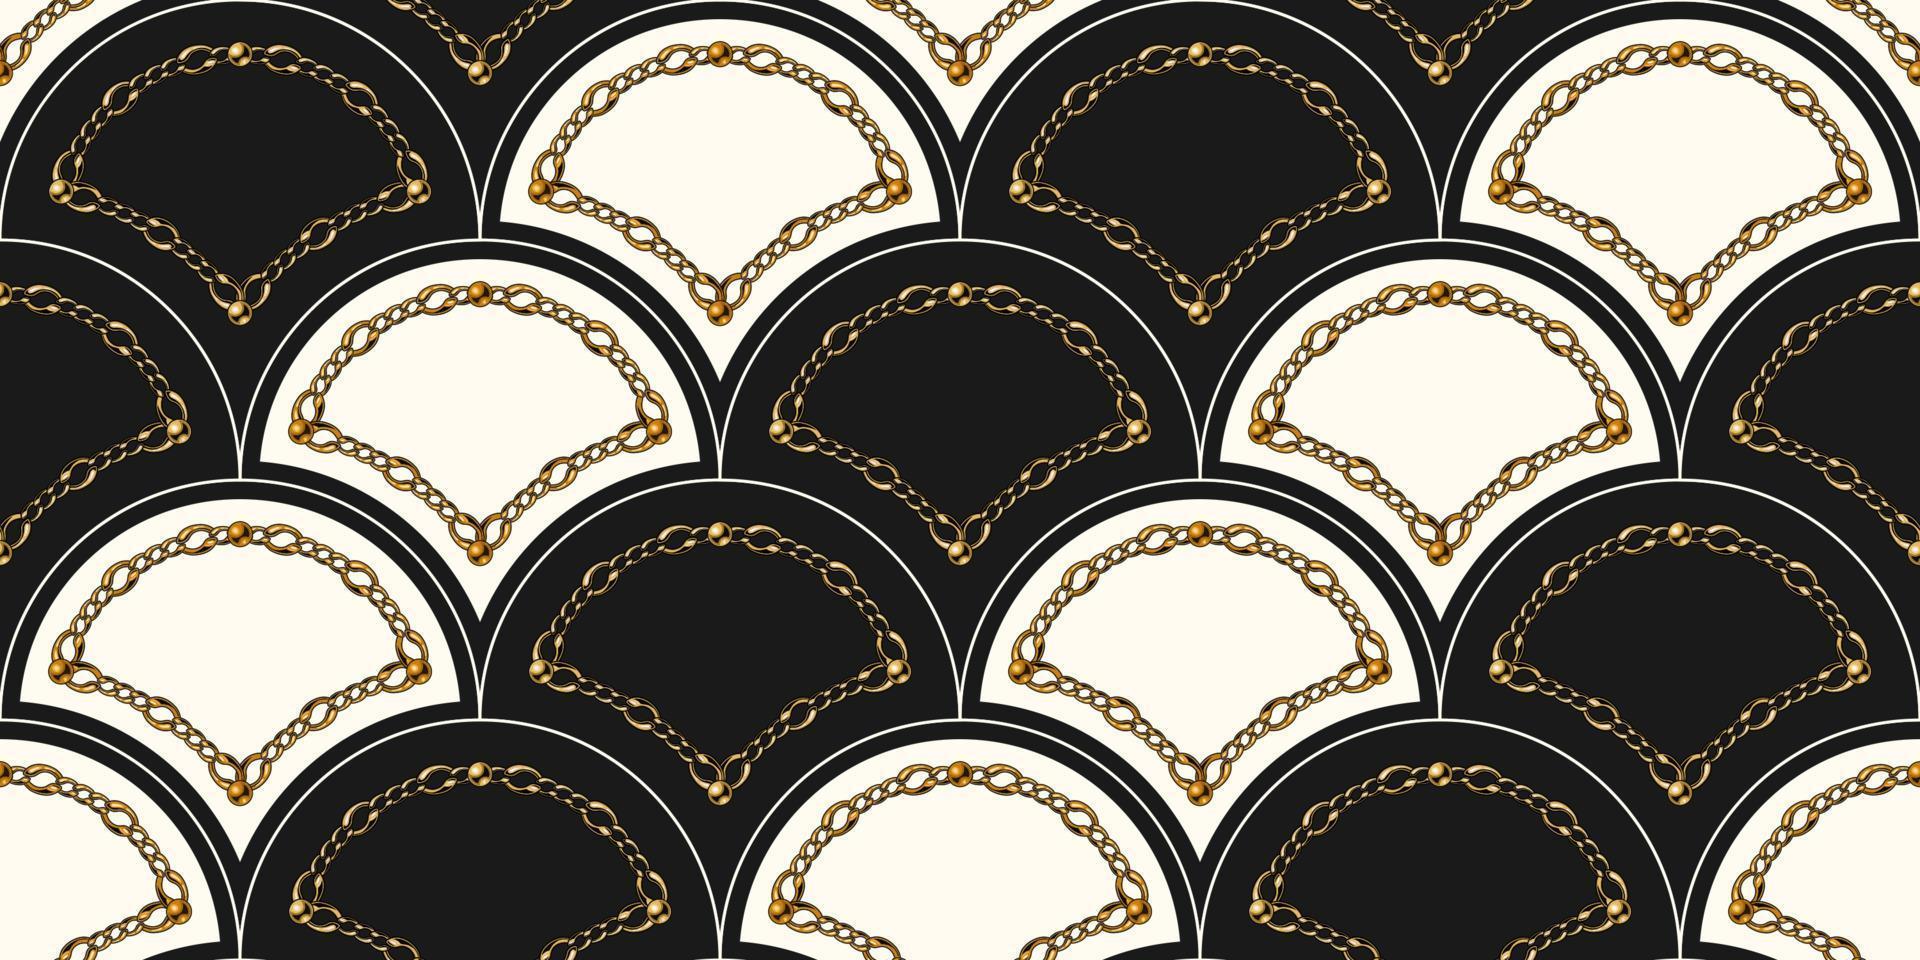 Muschelförmiges, nahtloses Gittermuster mit goldener Kette und Perlen auf schwarzem Hintergrund. Modeillustration. nahtlose Art-Deco-Muster. Vektor